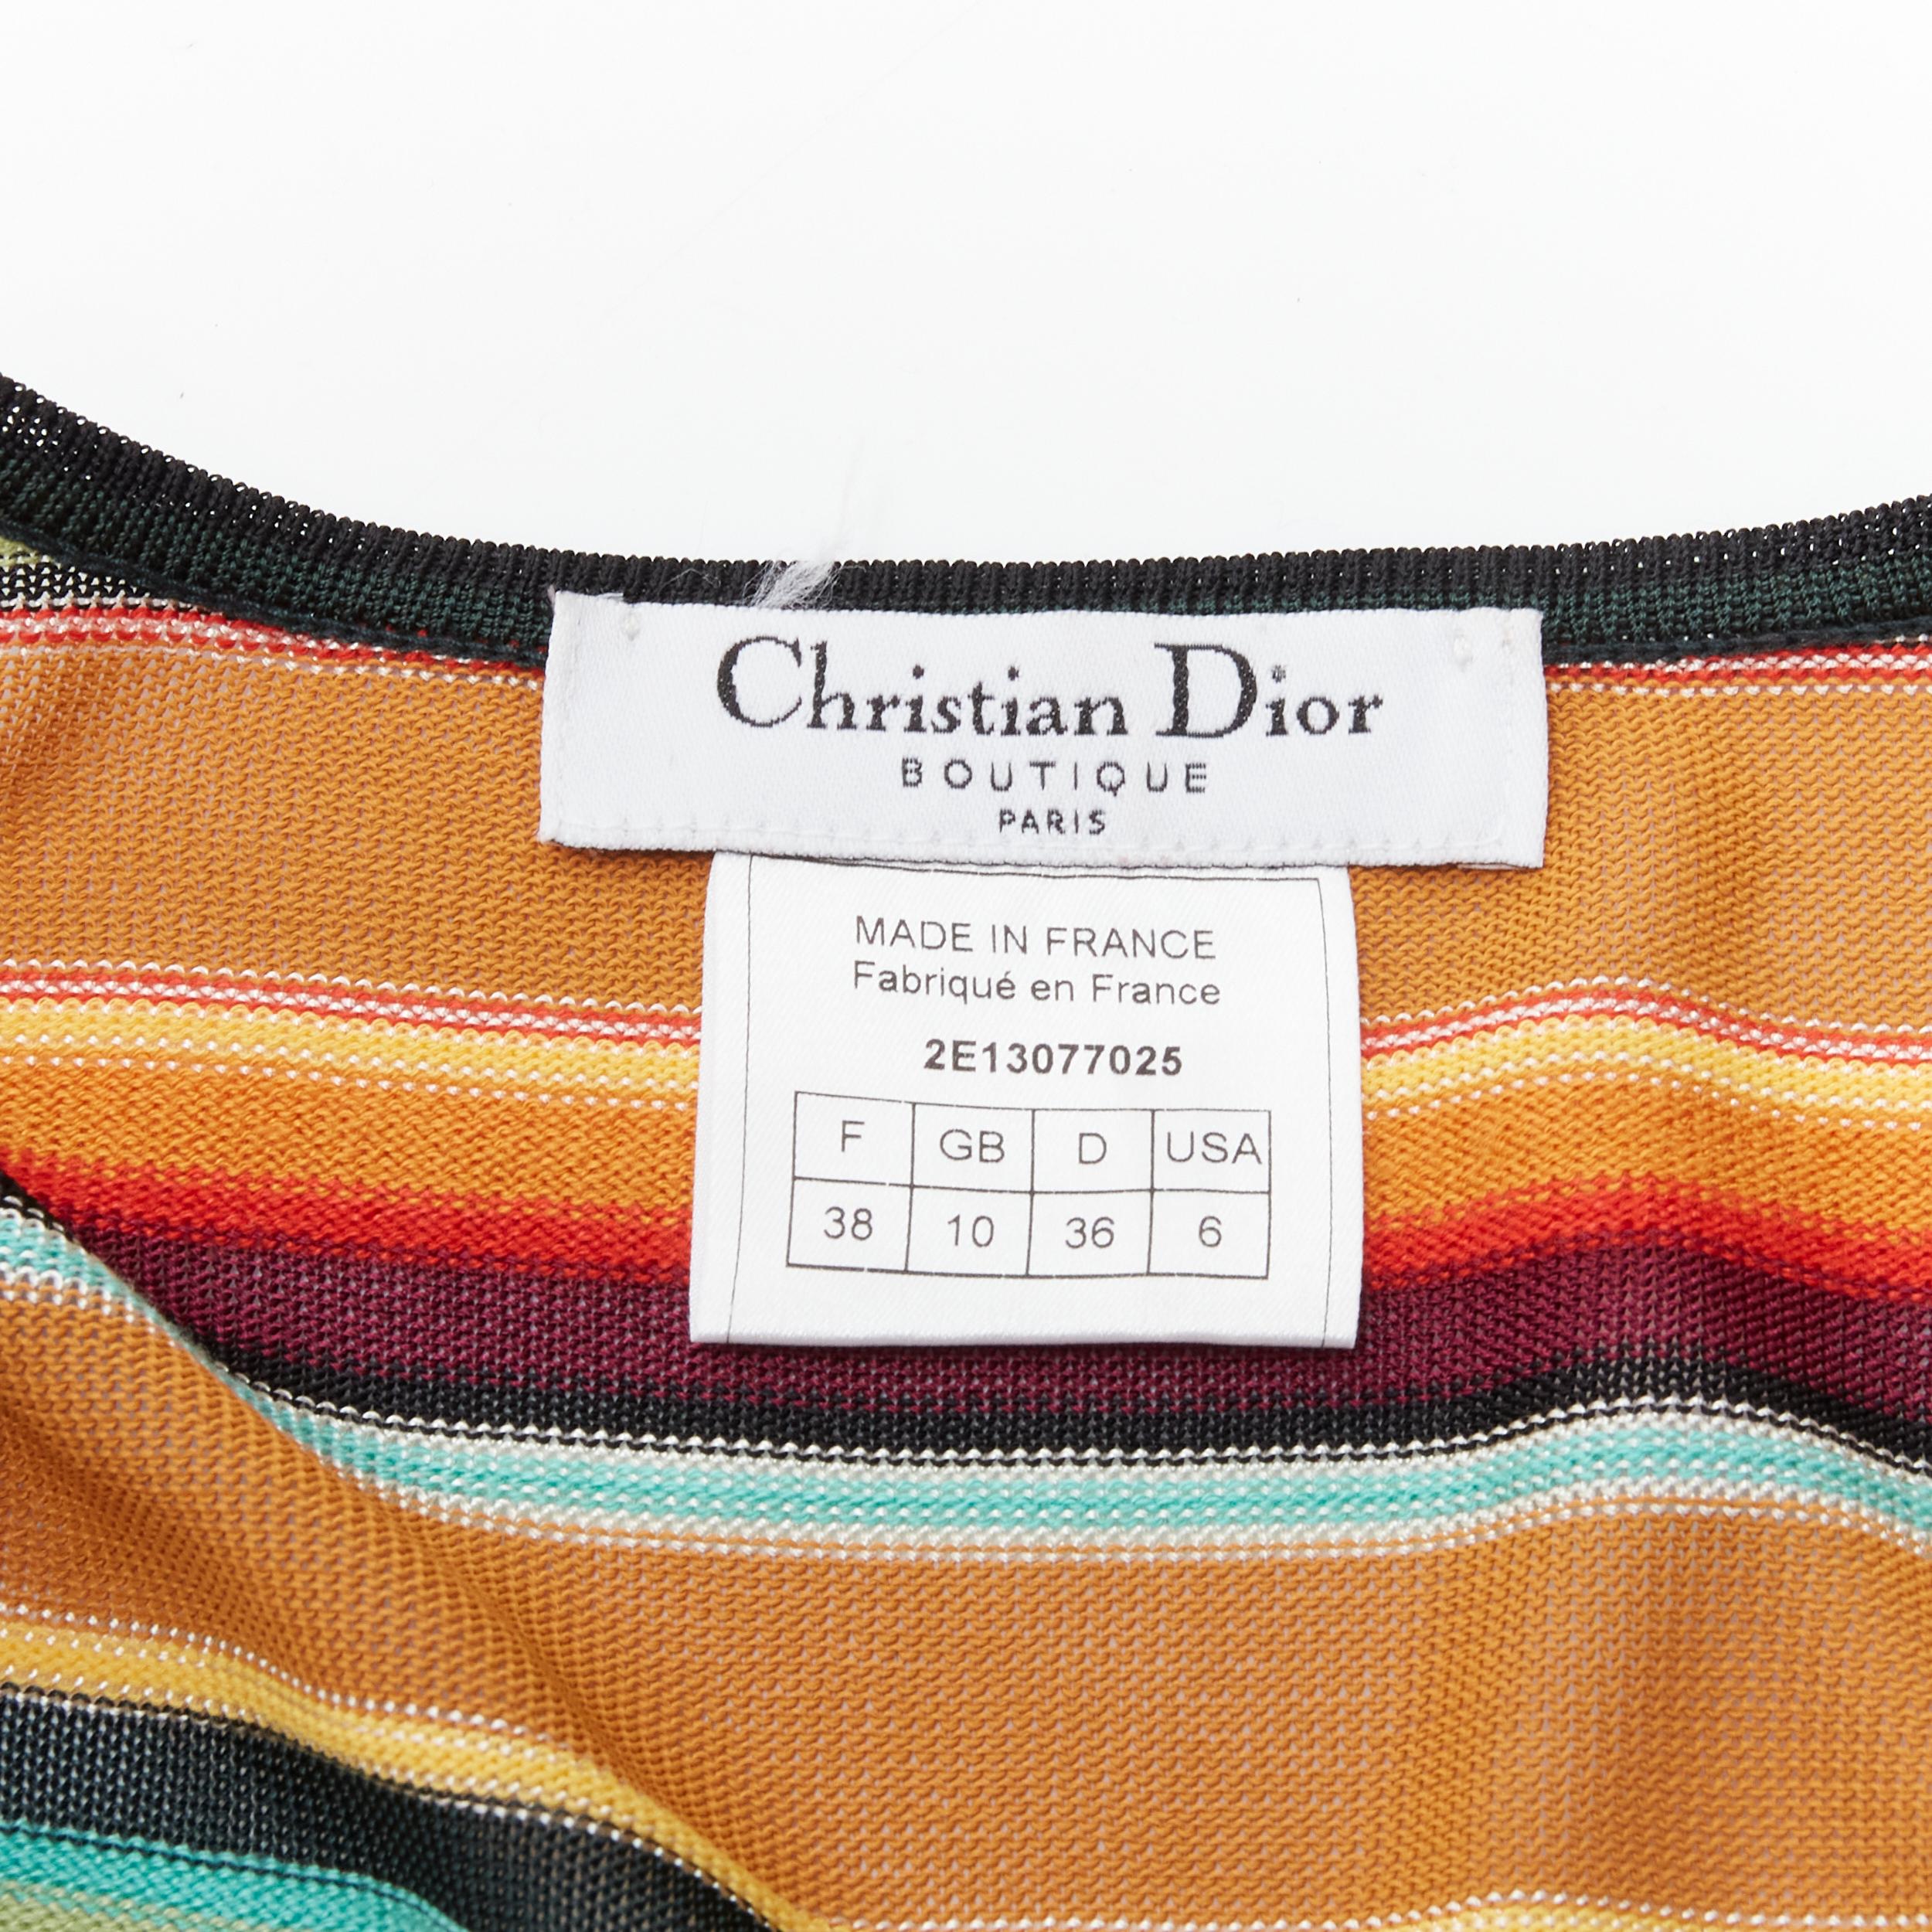 CHRISTIAN DIOR - Cardigan rayé à panneaux transparents style aztèque, taille FR 38, 2001 6